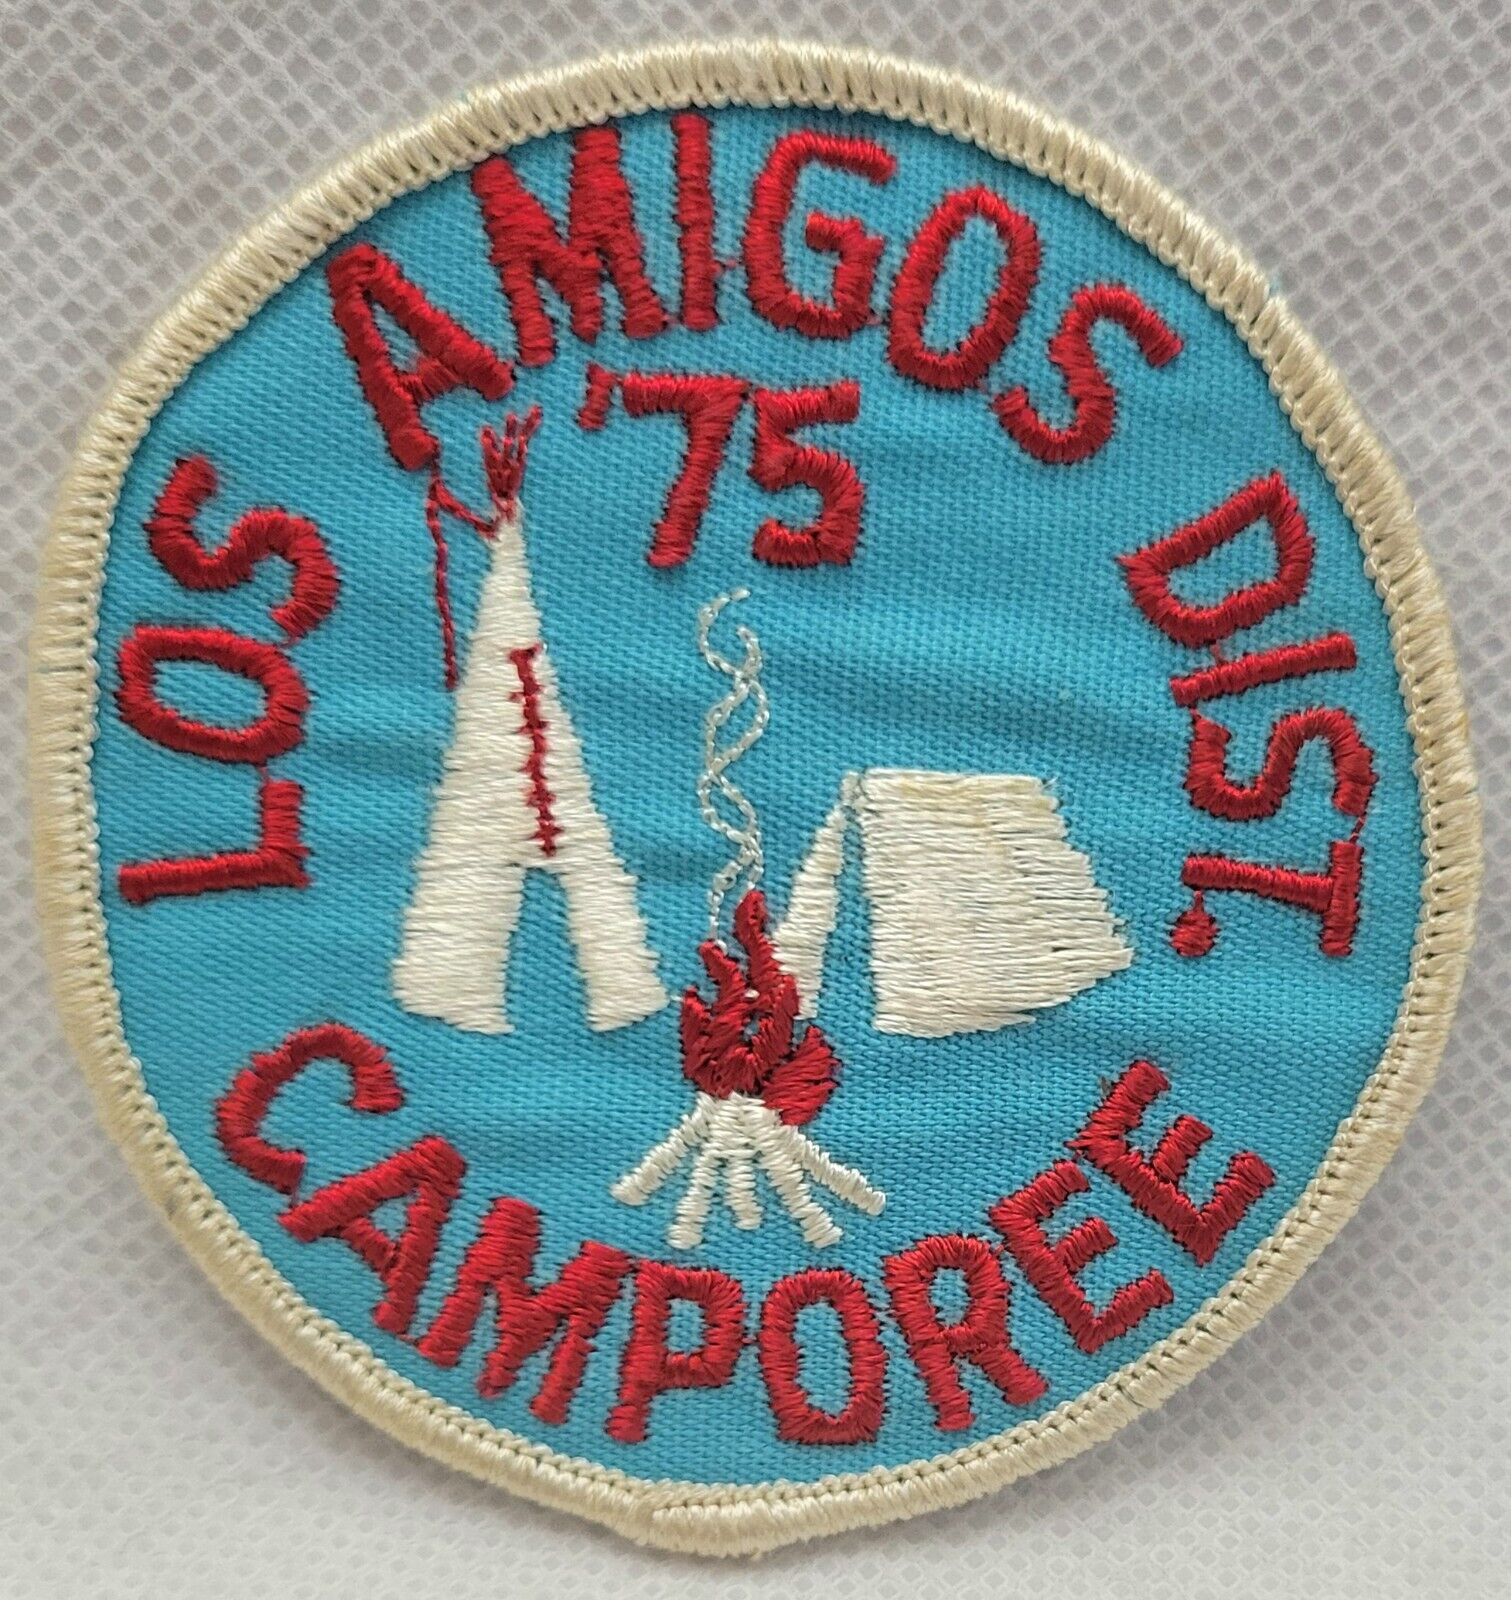 Vintage BSA 1975 Cloth Patch Boy Scouts Of America Los Amigos District Camporee